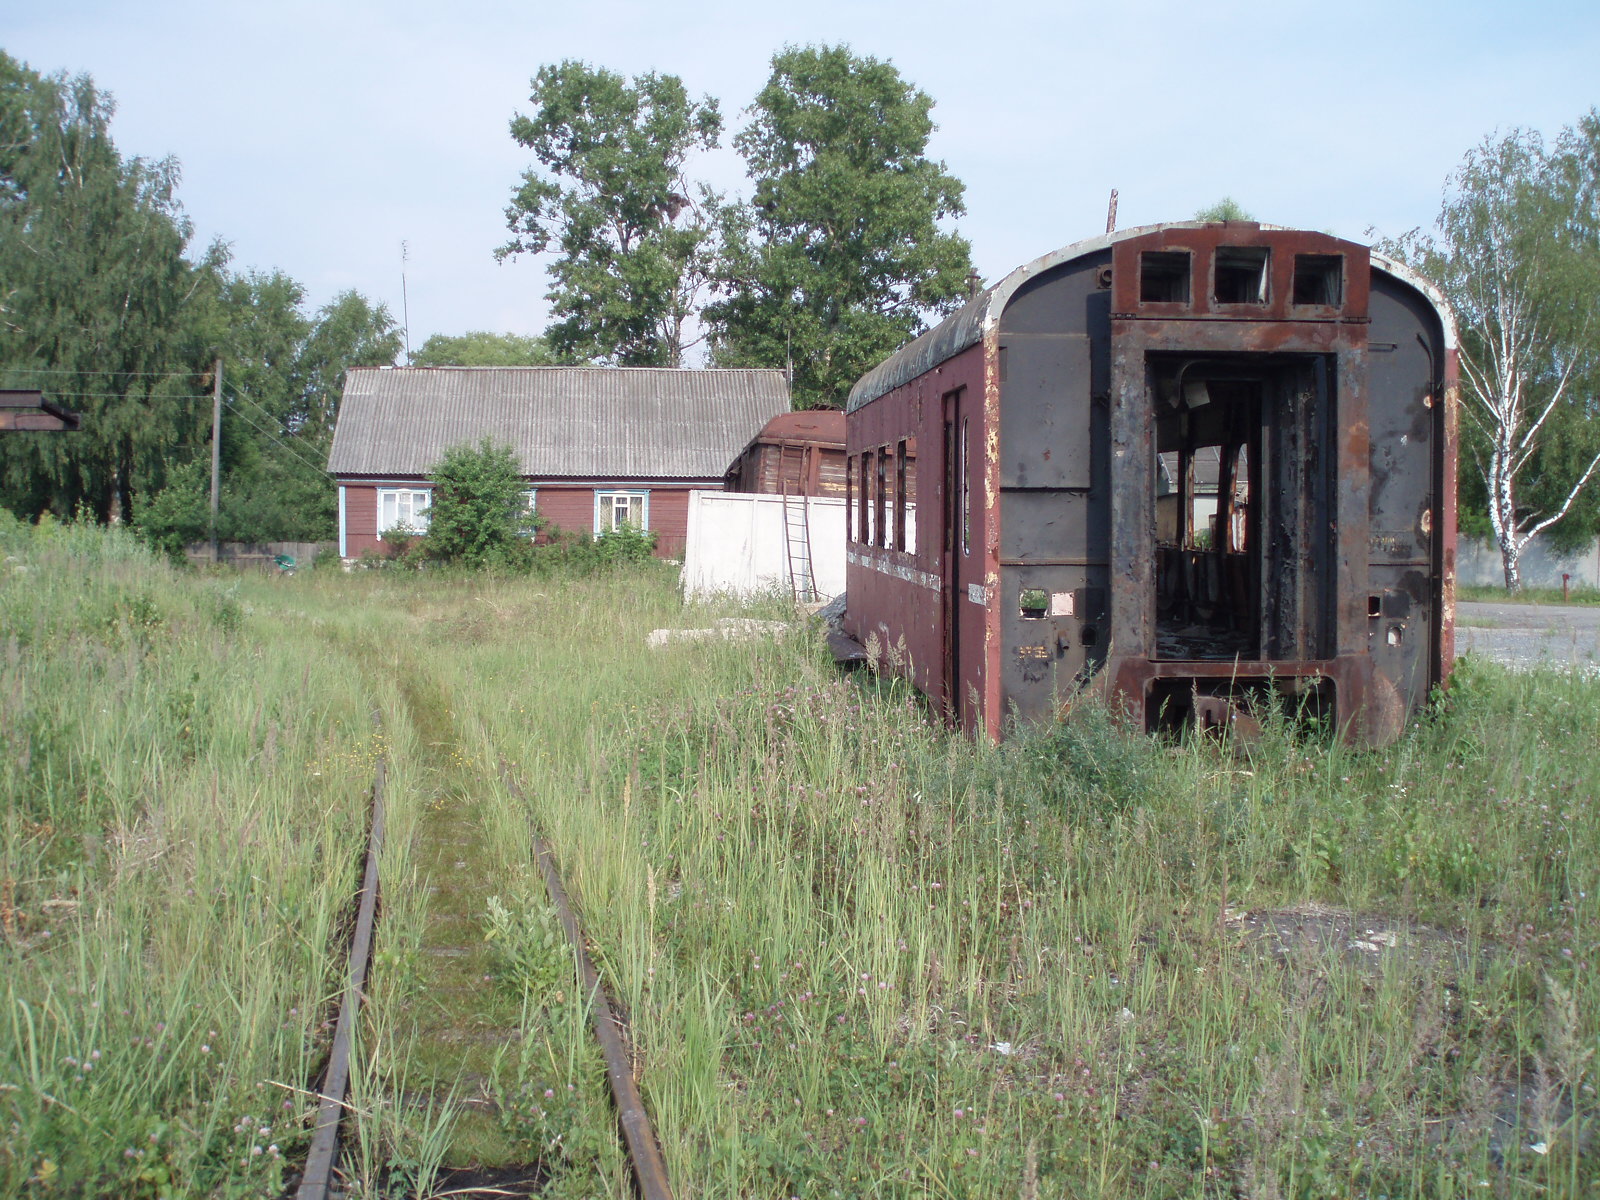 Рязанско-Владимирская узкоколейная железная дорога - фотографии, сделанные в 2006 году (часть 4)